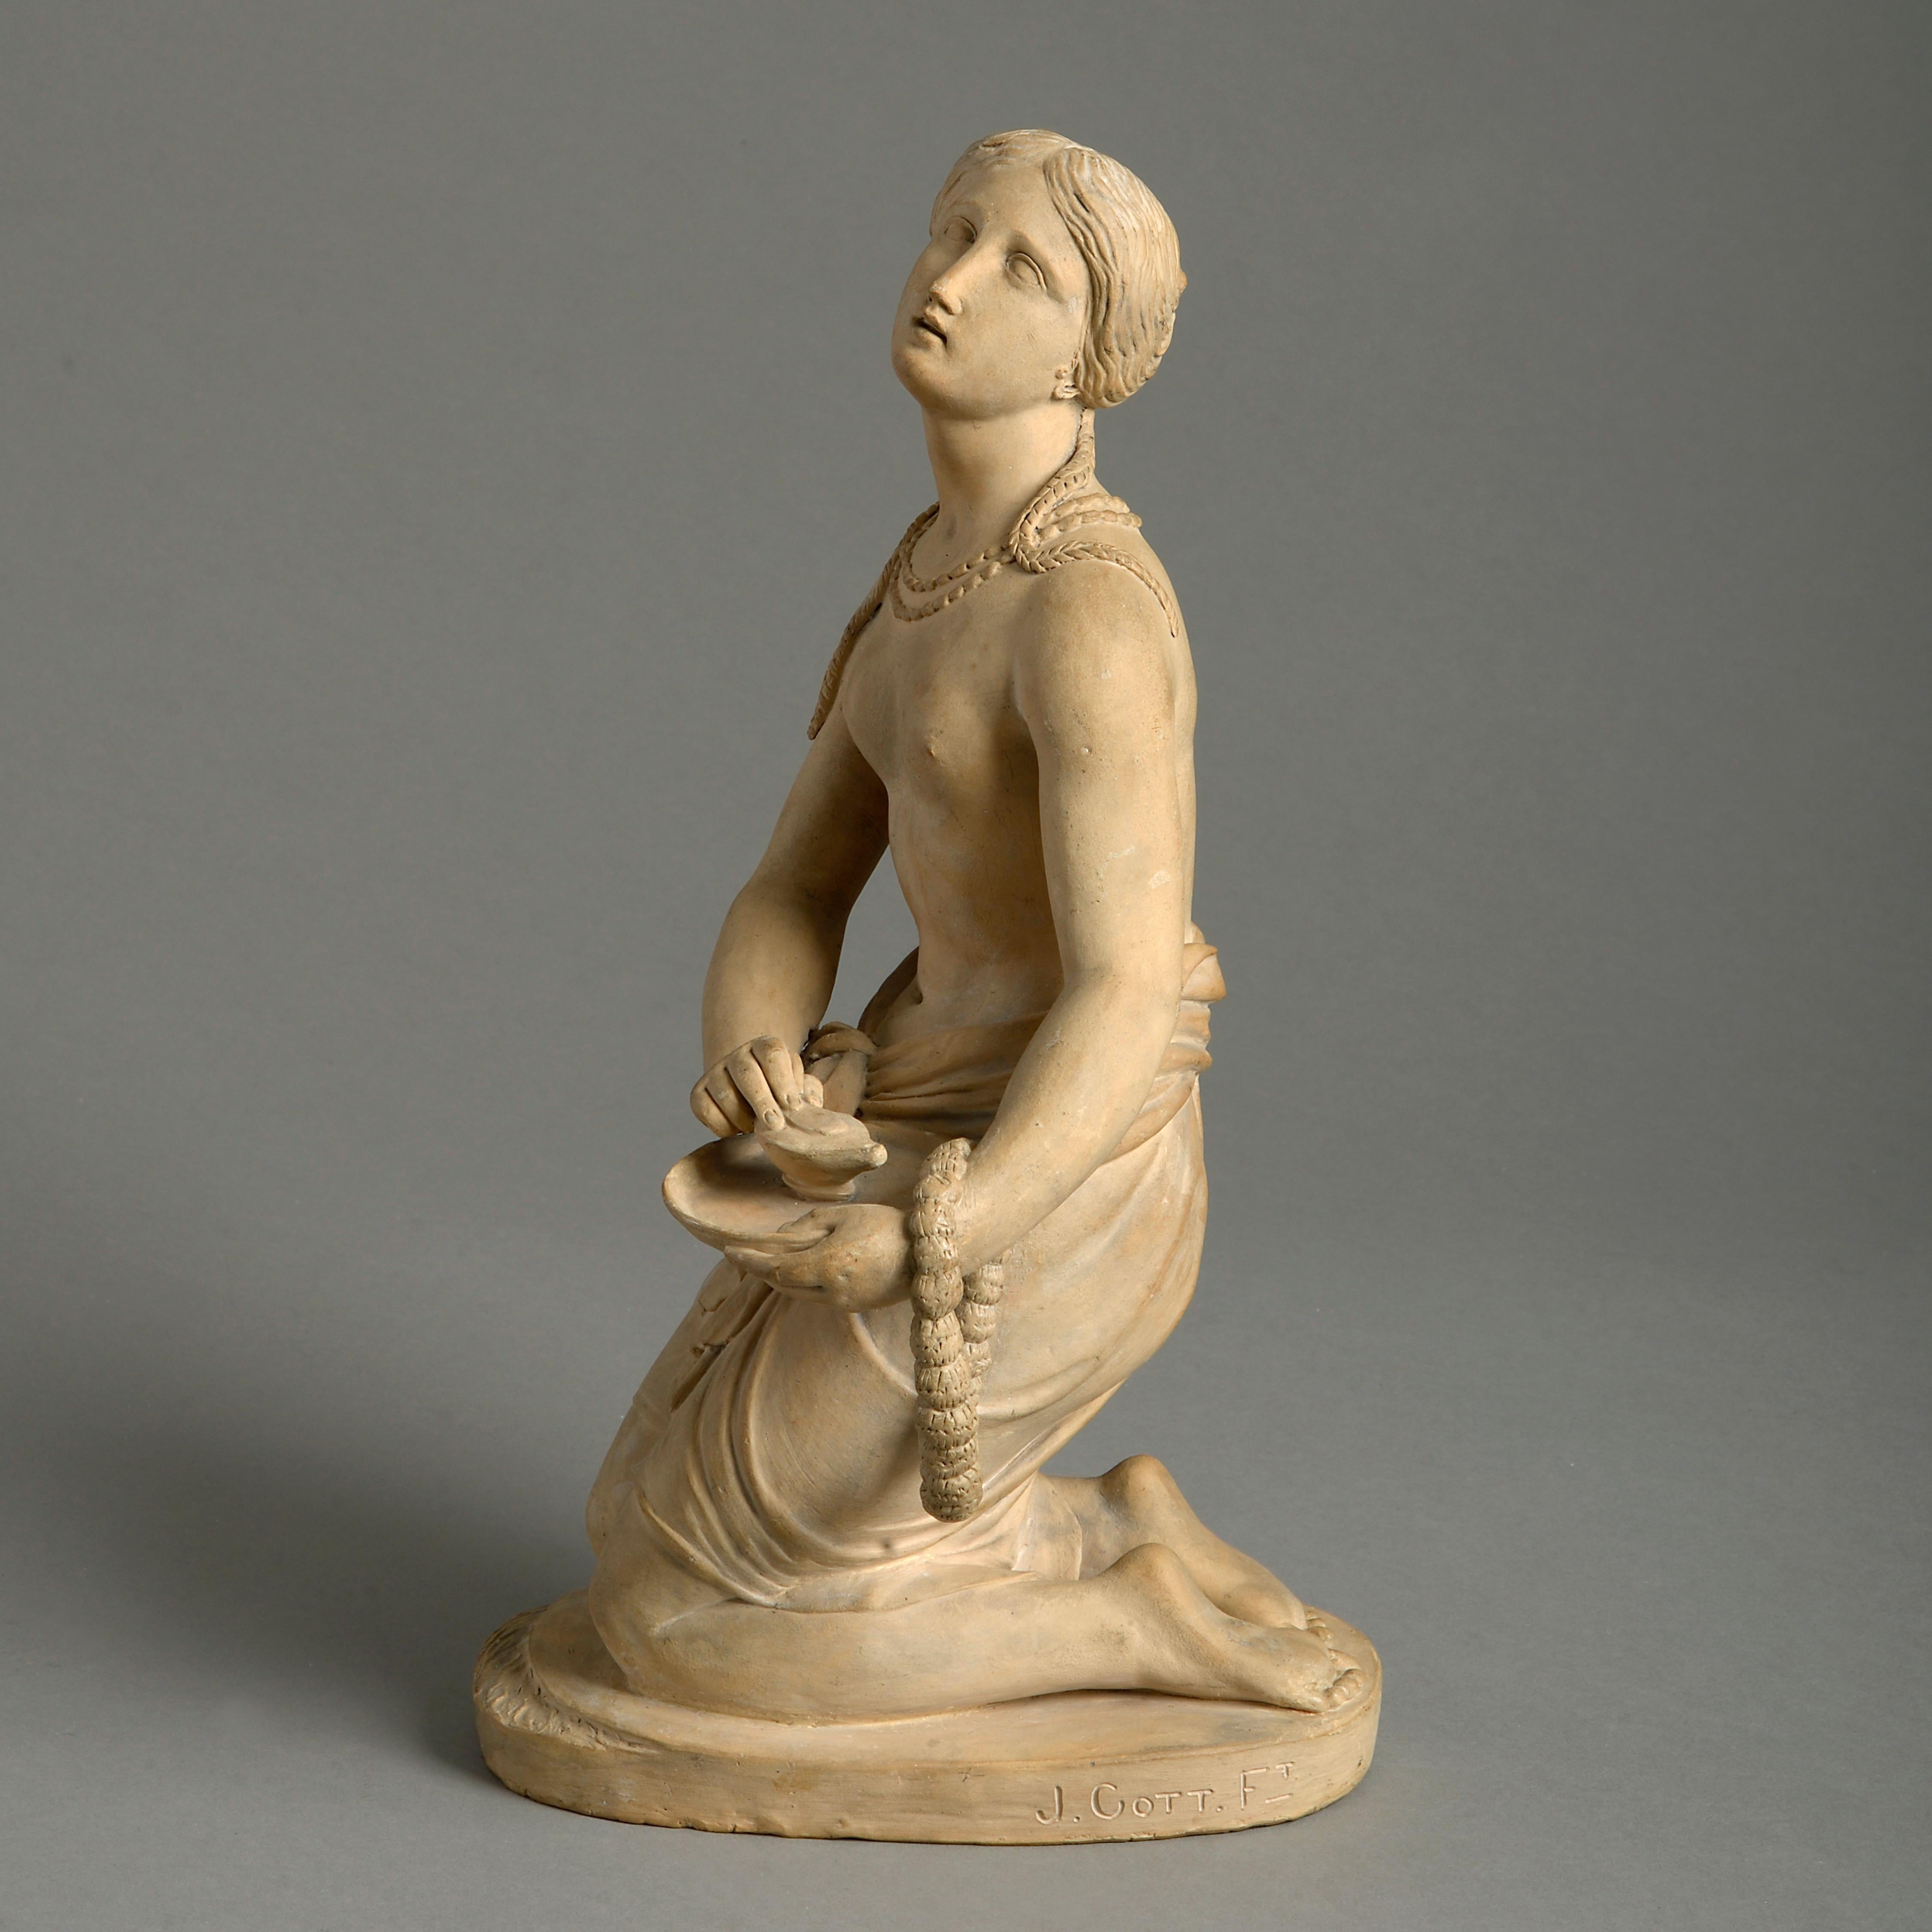 Joseph Gott (1785-1860)
une femme hindoue place une lampe sur le Gange

Terre cuite

Mesures : 13.5in. (34cm) de haut

Cette figure en terre cuite est une étude achevée pour la version en marbre, vendue chez Christie's, Londres, le 28